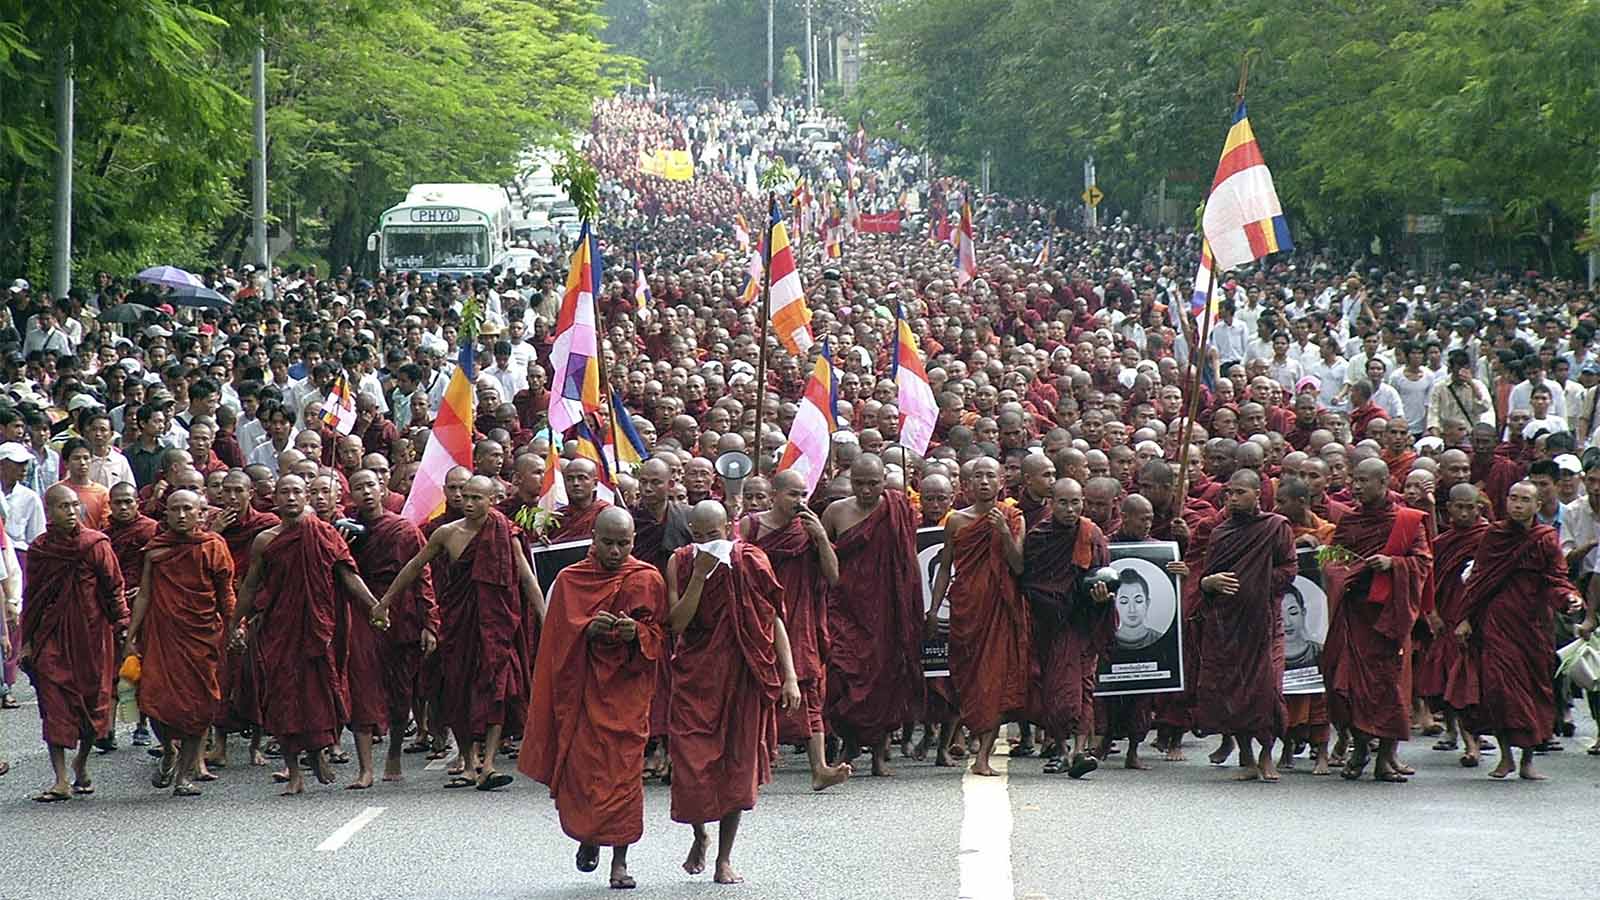 מחאת נזירים בודהיסטים במינמאר, נגד השלטון הצבאי, 2007 (צילום: AP Photo/File).